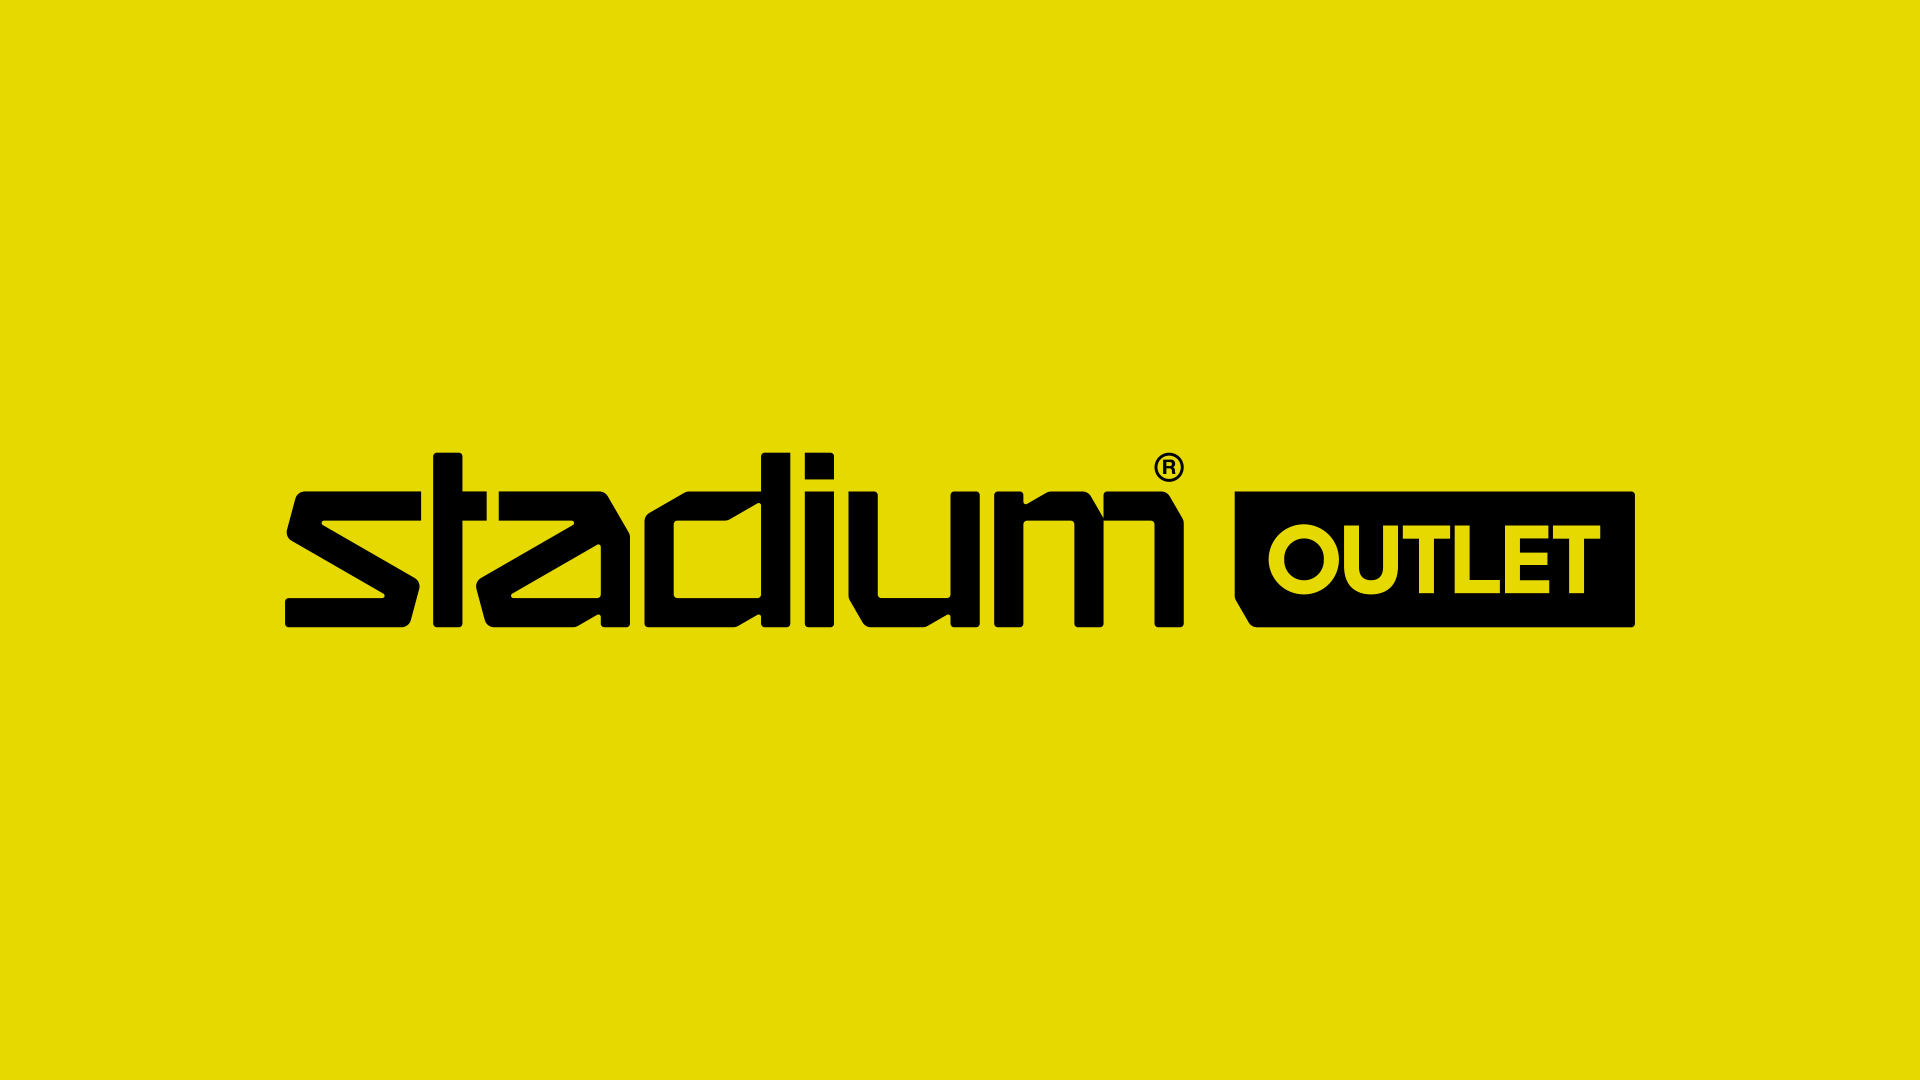 www.stadiumoutlet.fi